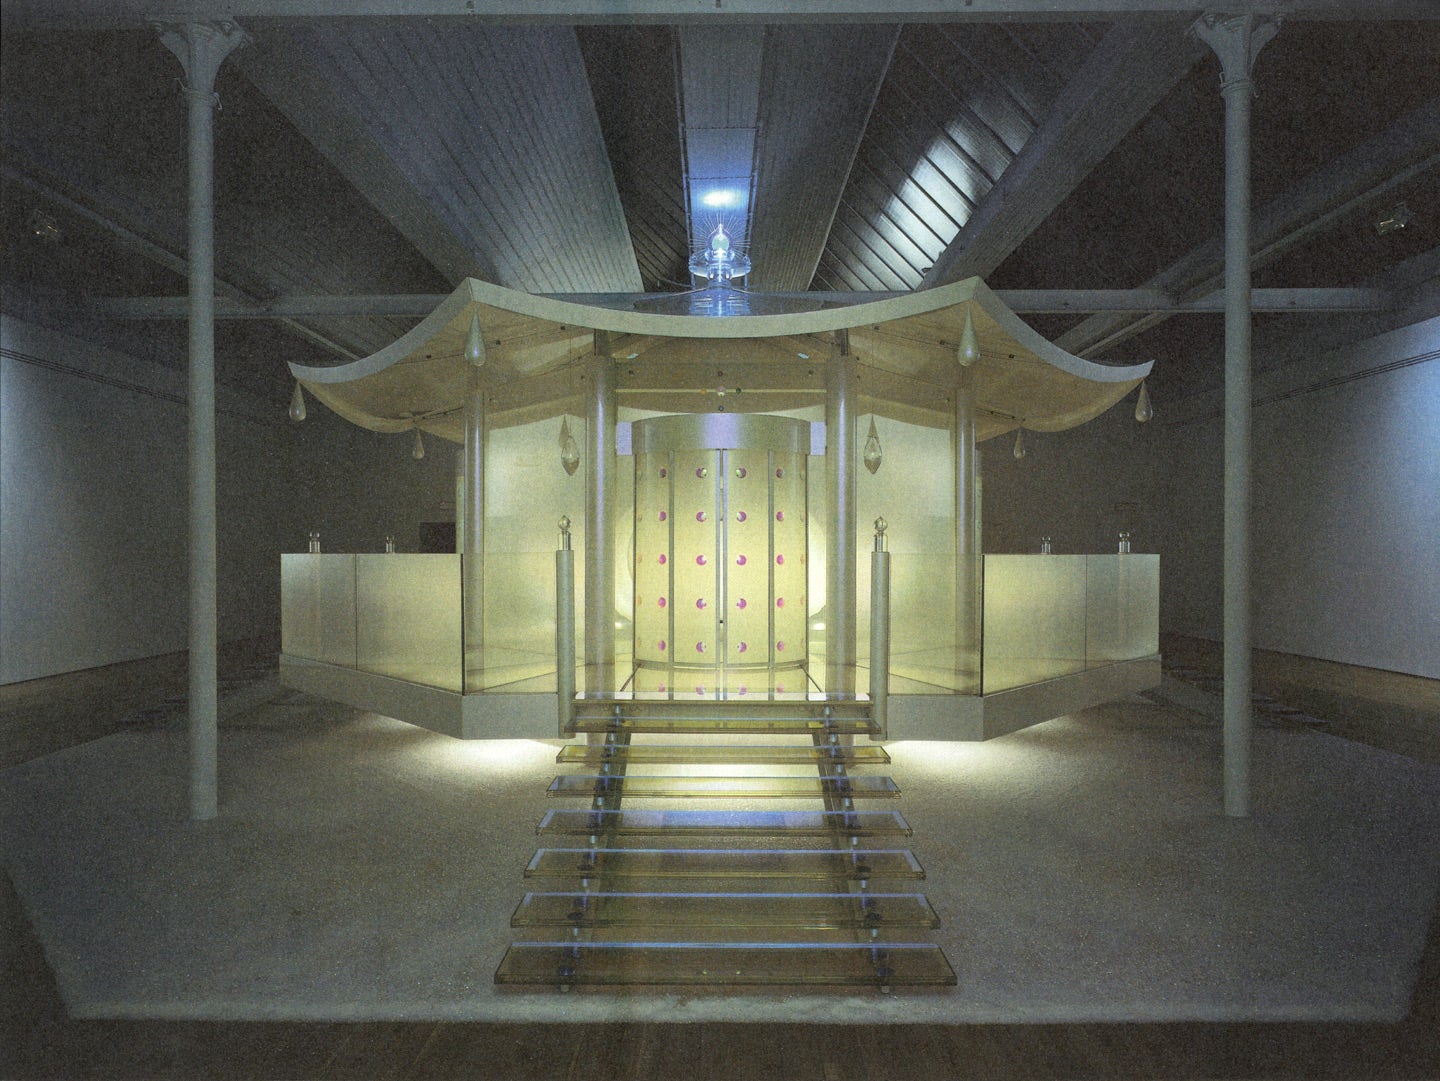 Mariko Mori: Dream Temple